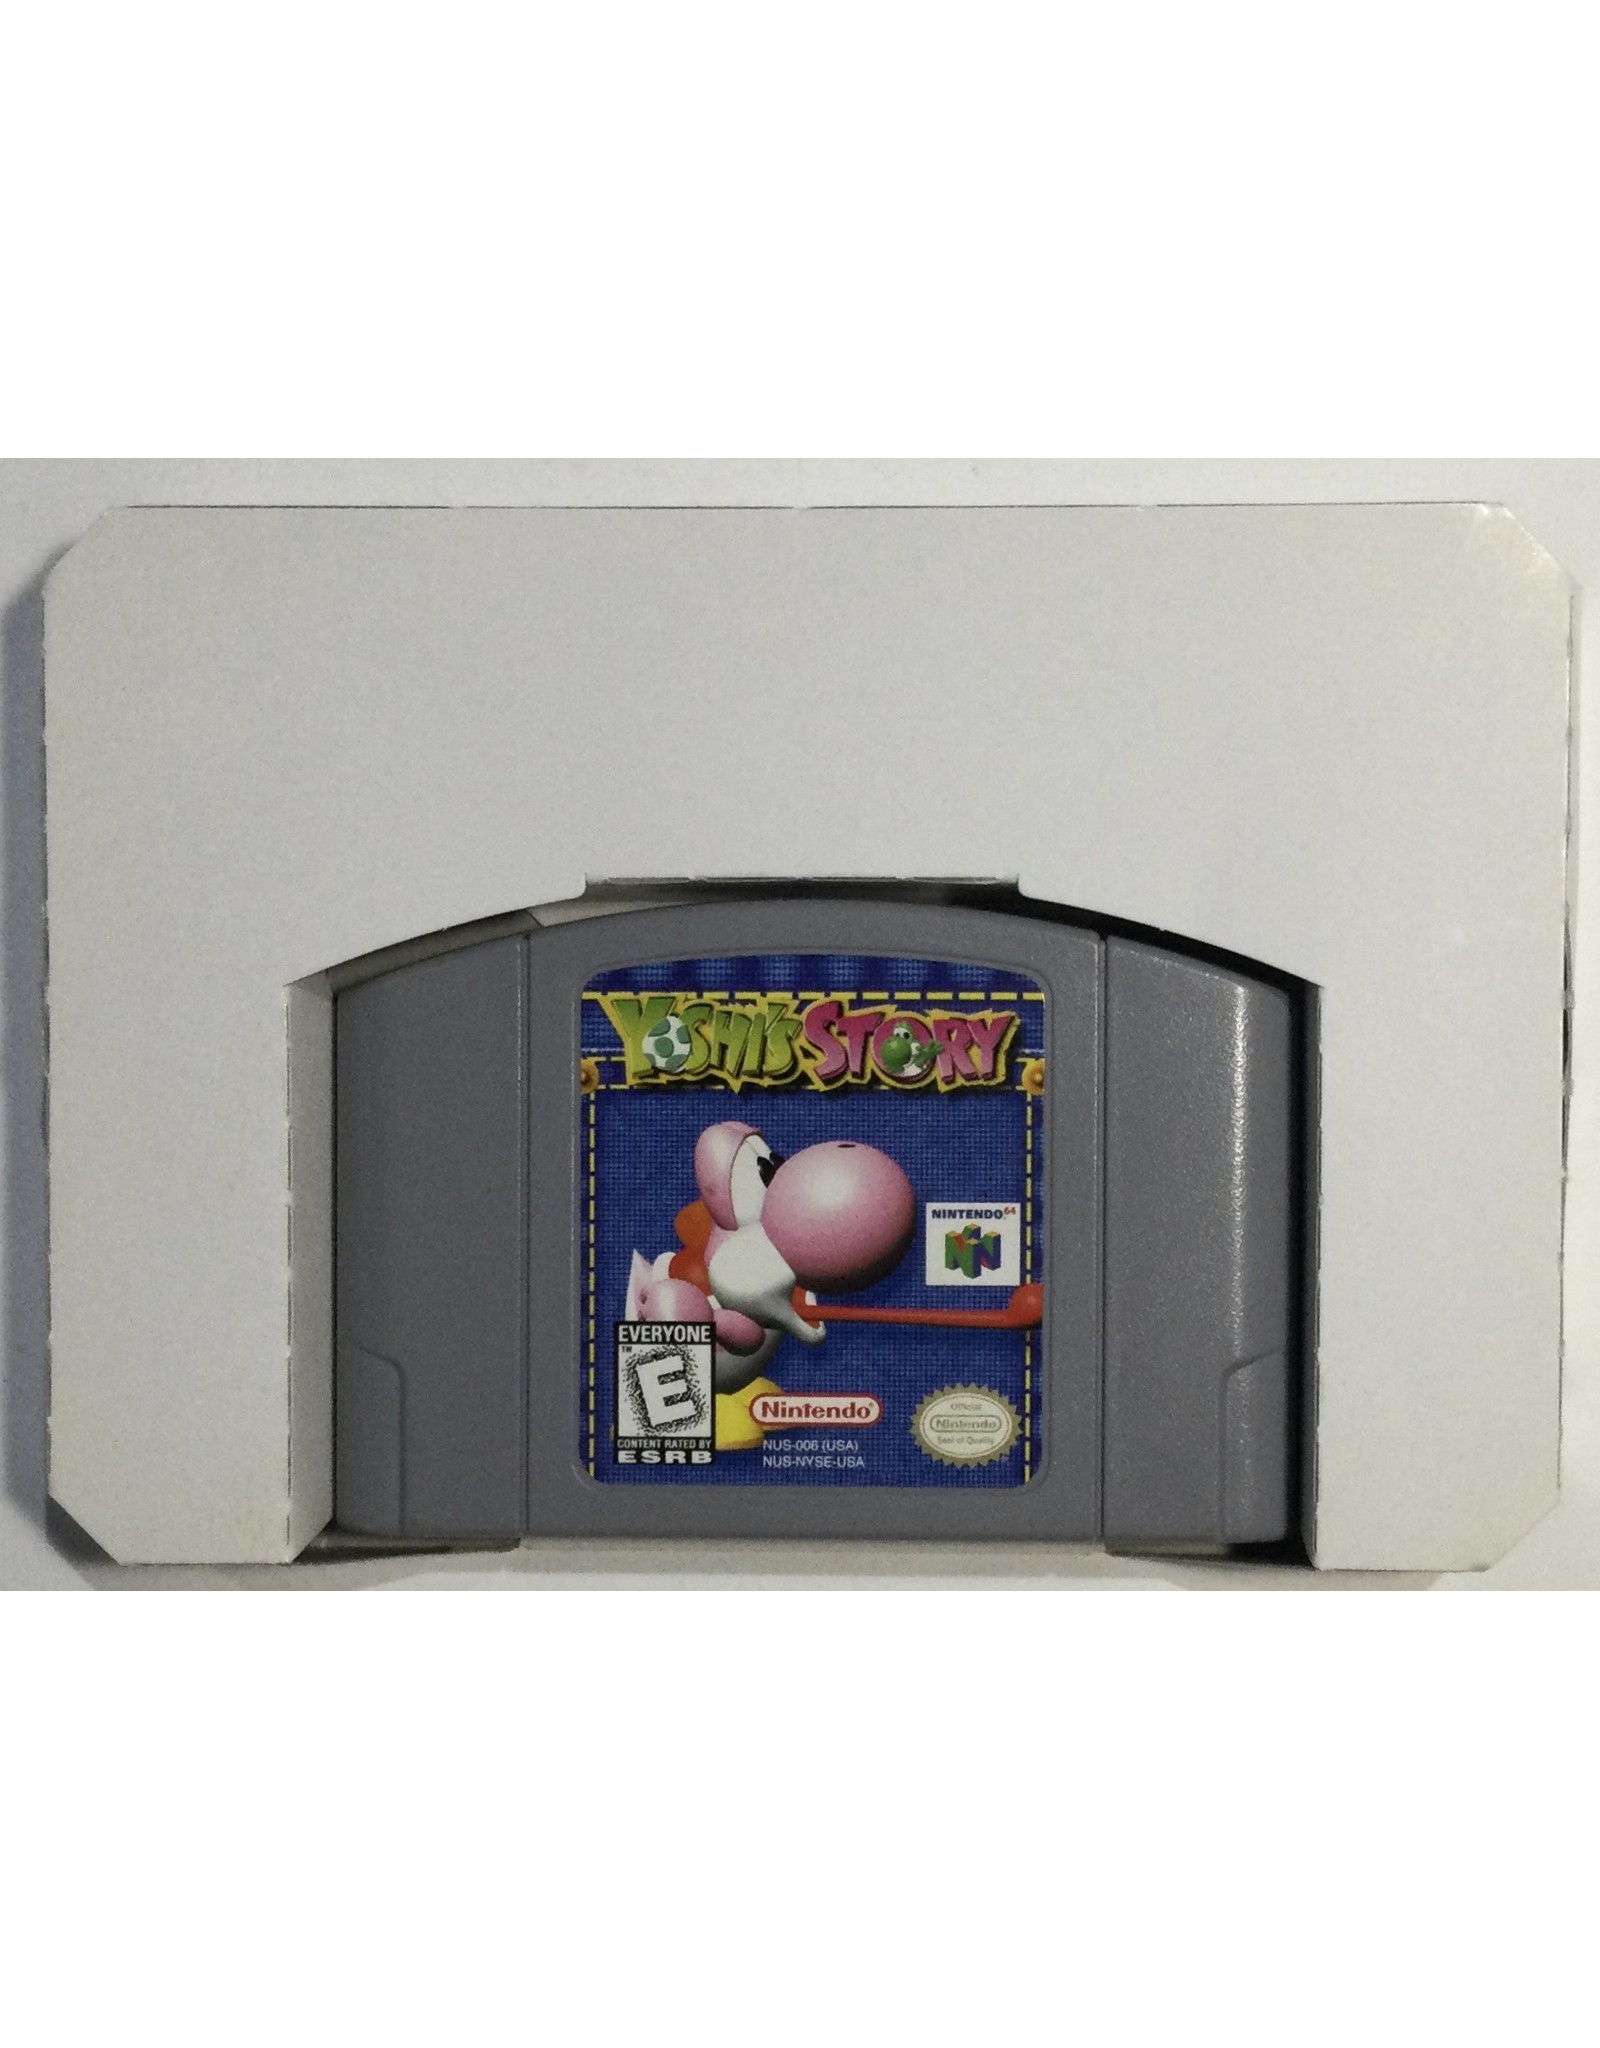 Nintendo Yoshi's Story for Nintendo 64 (N64) - CIB